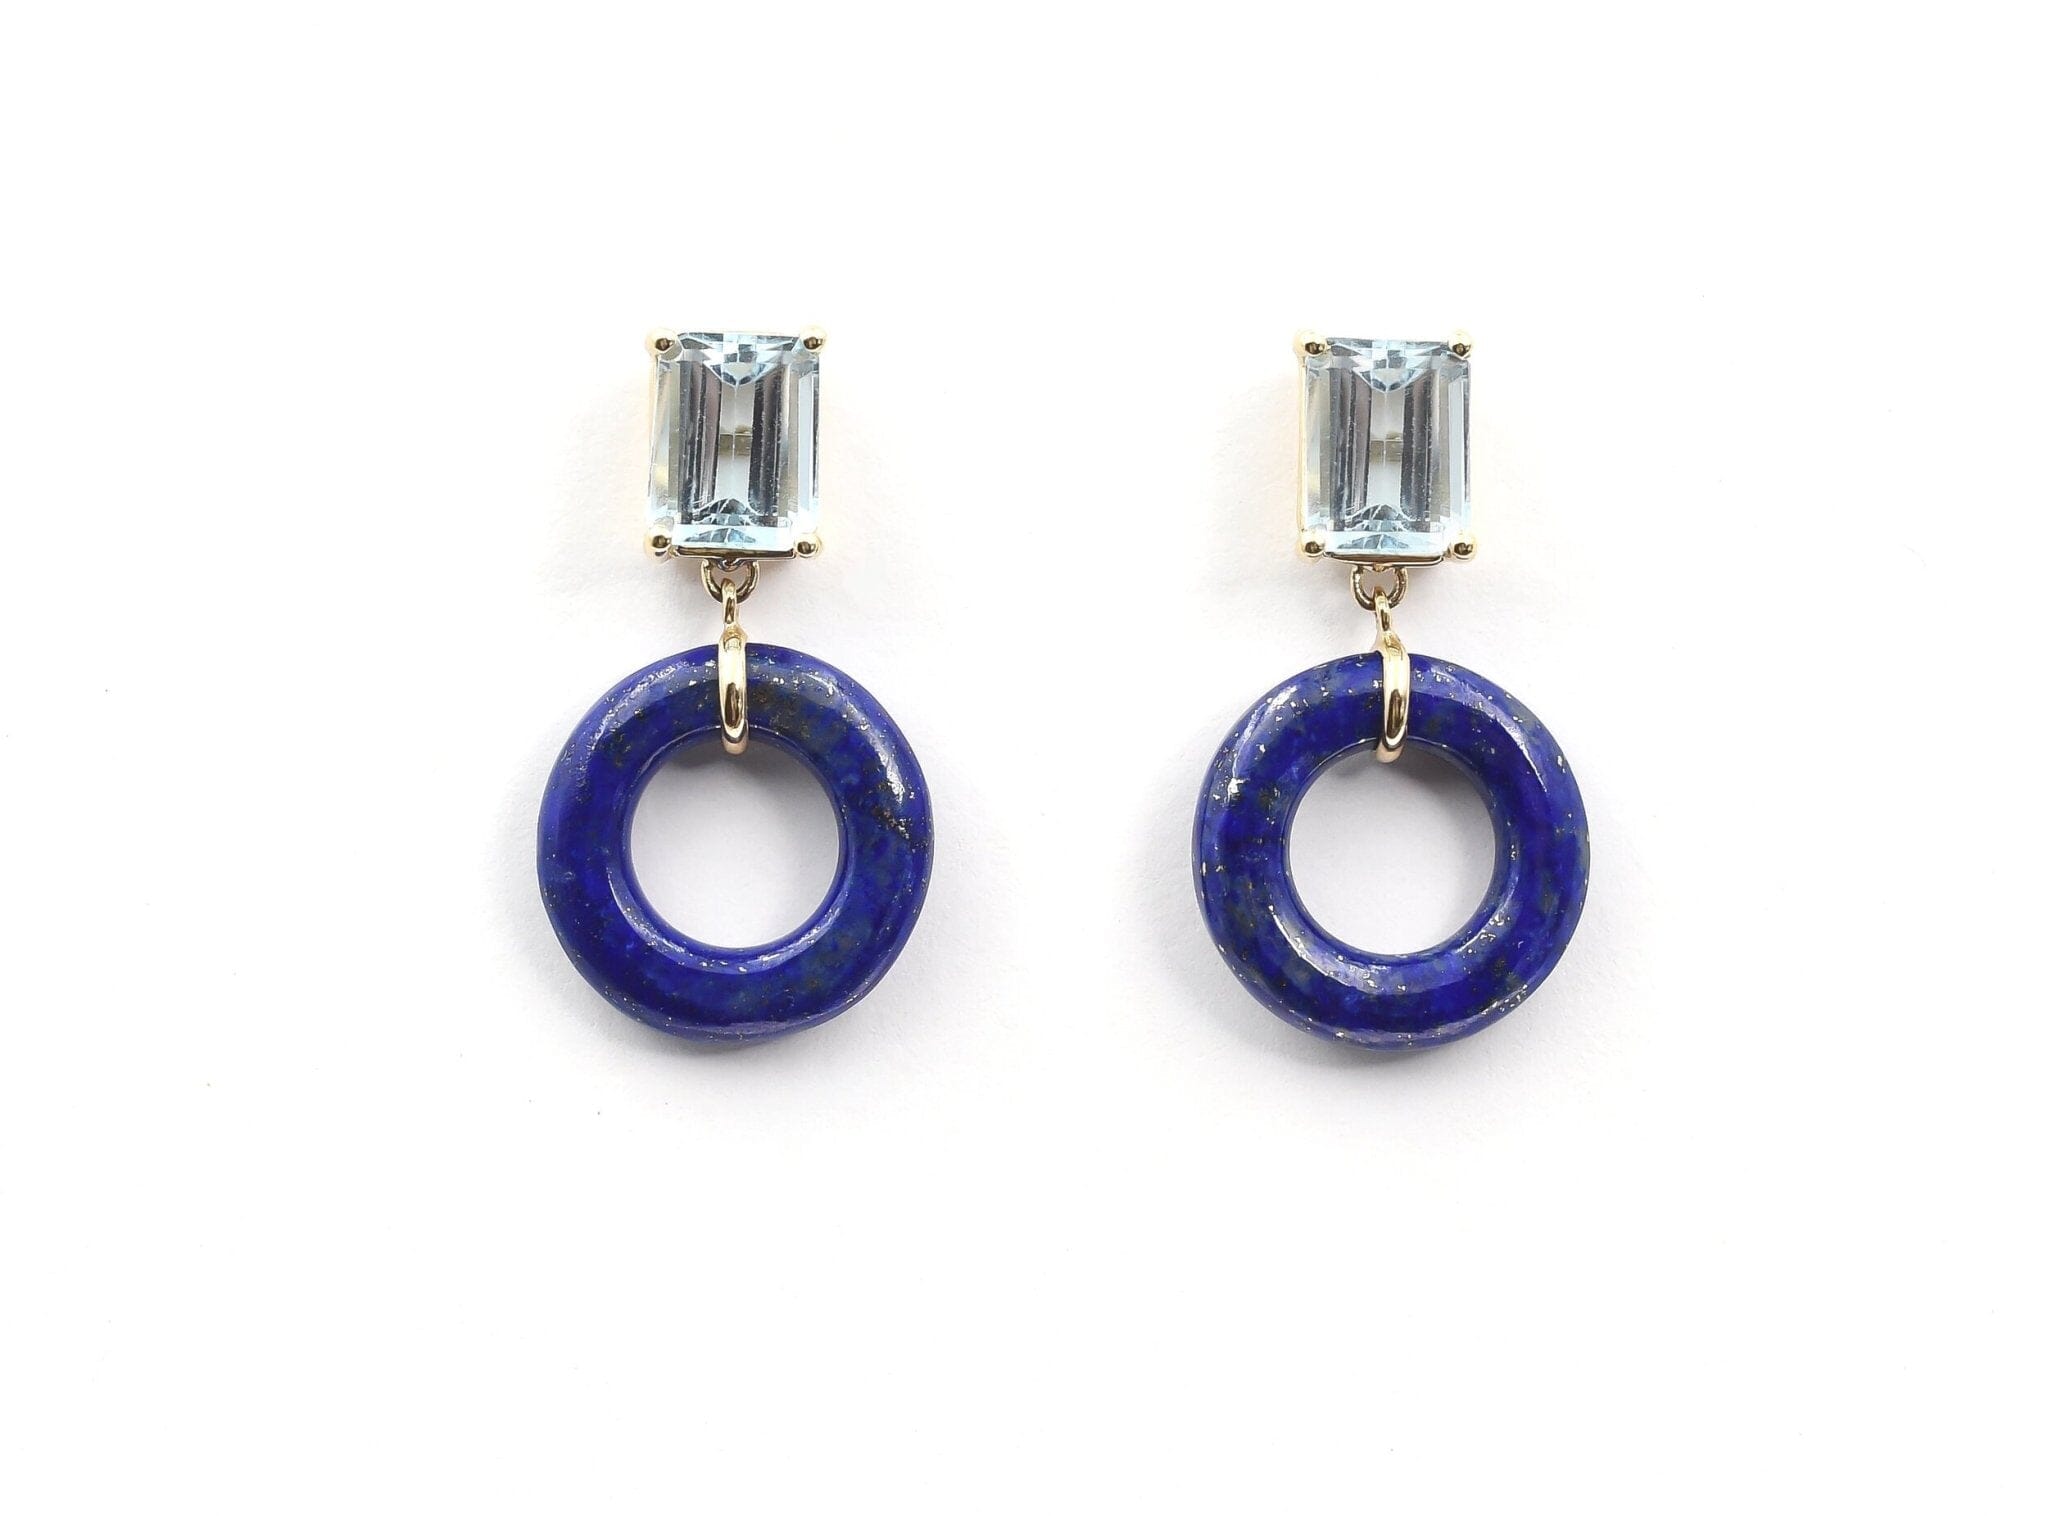 Emerald Cut Blueberry Glazed Munchkin Earrings Earrings - BONDEYE JEWELRY ®